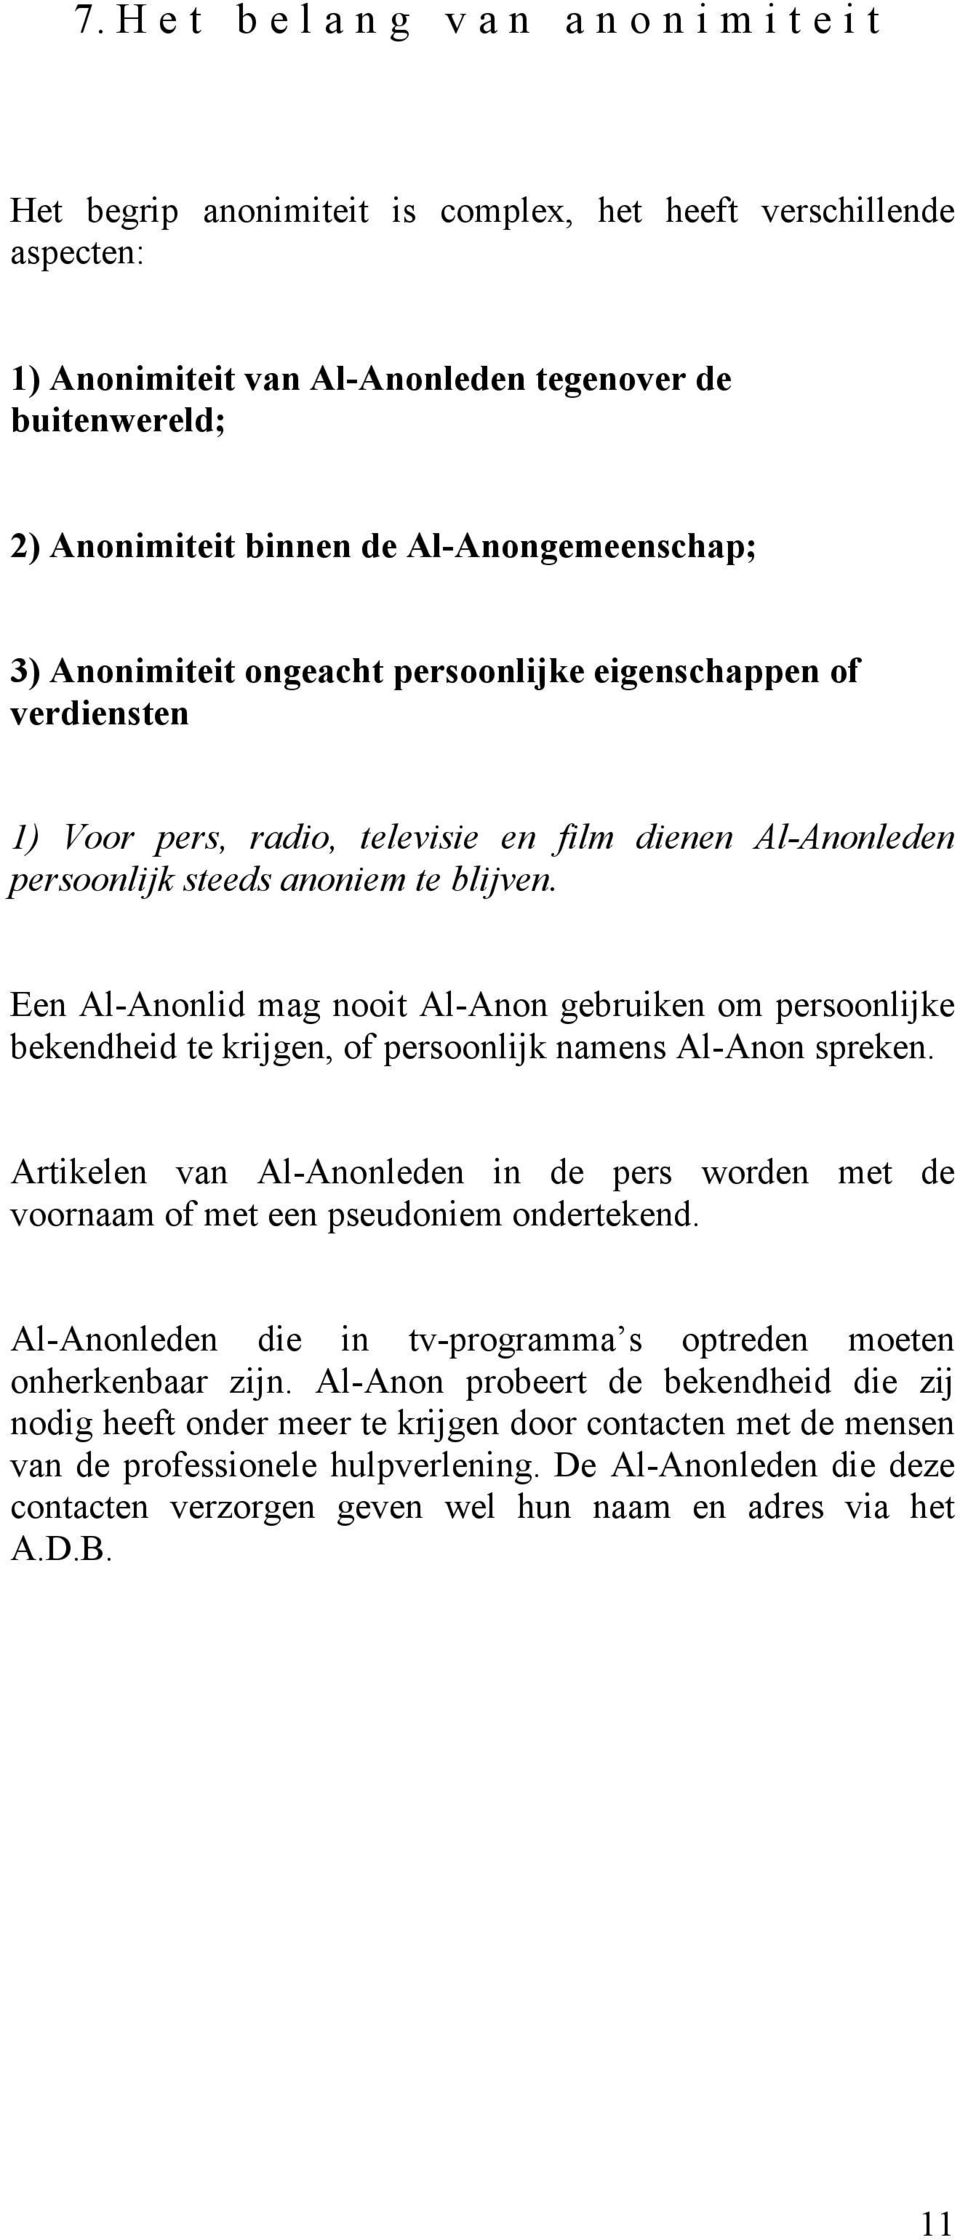 Een Al-Anonlid mag nooit Al-Anon gebruiken om persoonlijke bekendheid te krijgen, of persoonlijk namens Al-Anon spreken.